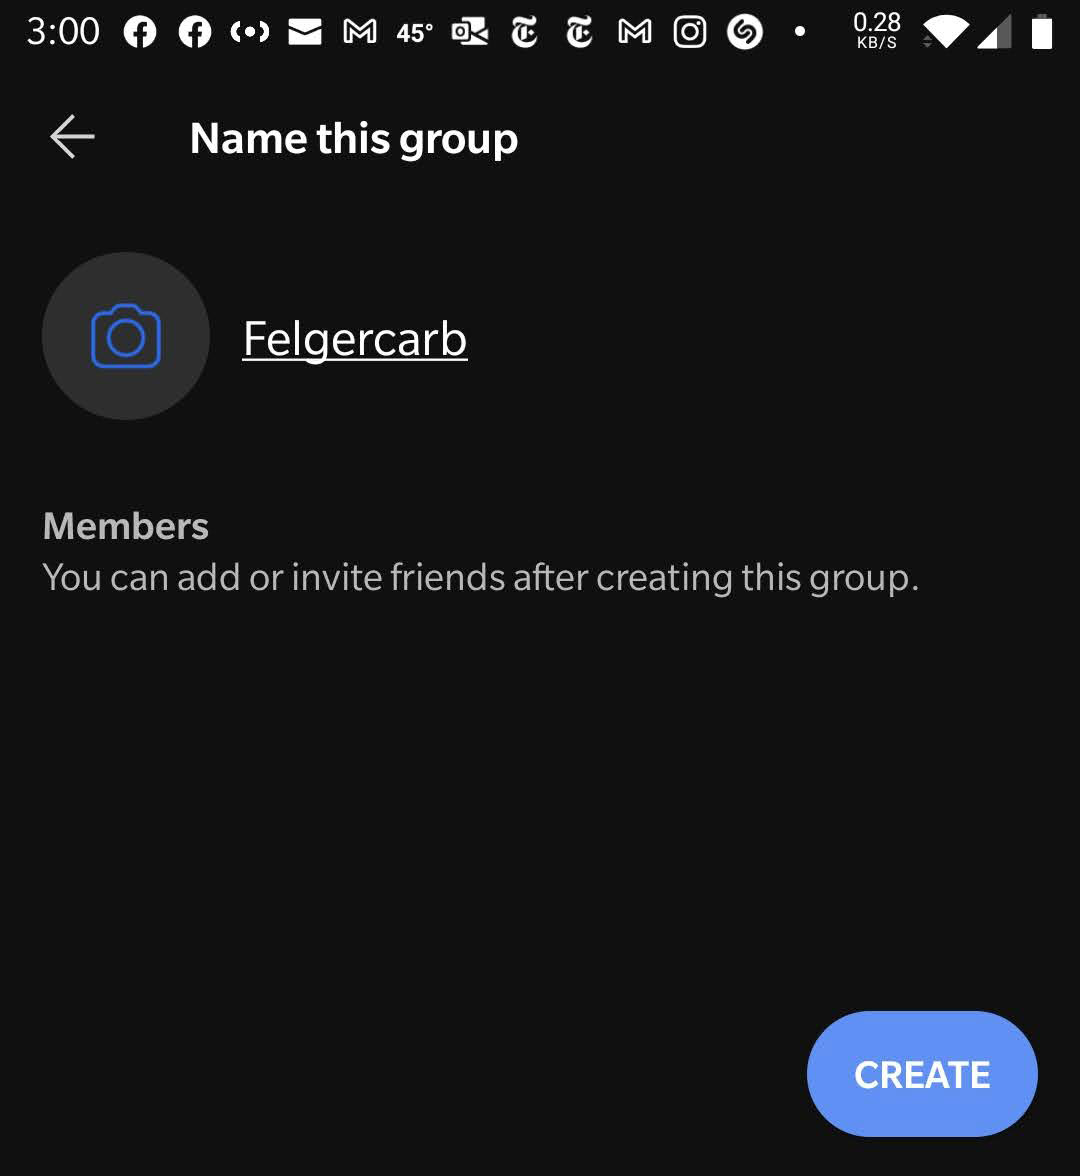 Скриншот экрана именования групп в приложении Signal для Android.